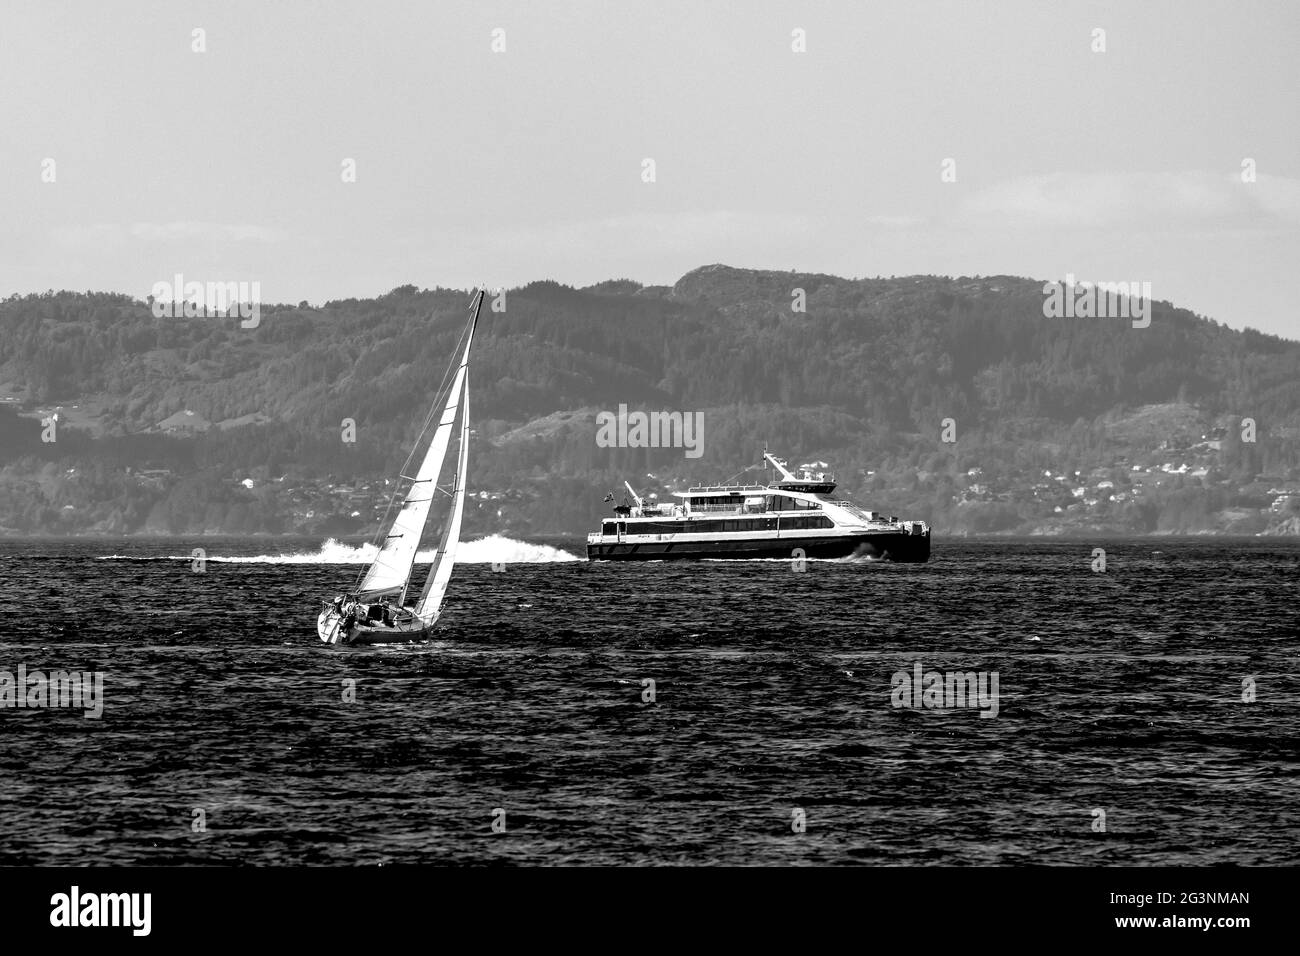 Sail boat Schmelnick in Byfjorden, Bergen, Norway. Local high speed catamaran Ekspressen in background Stock Photo